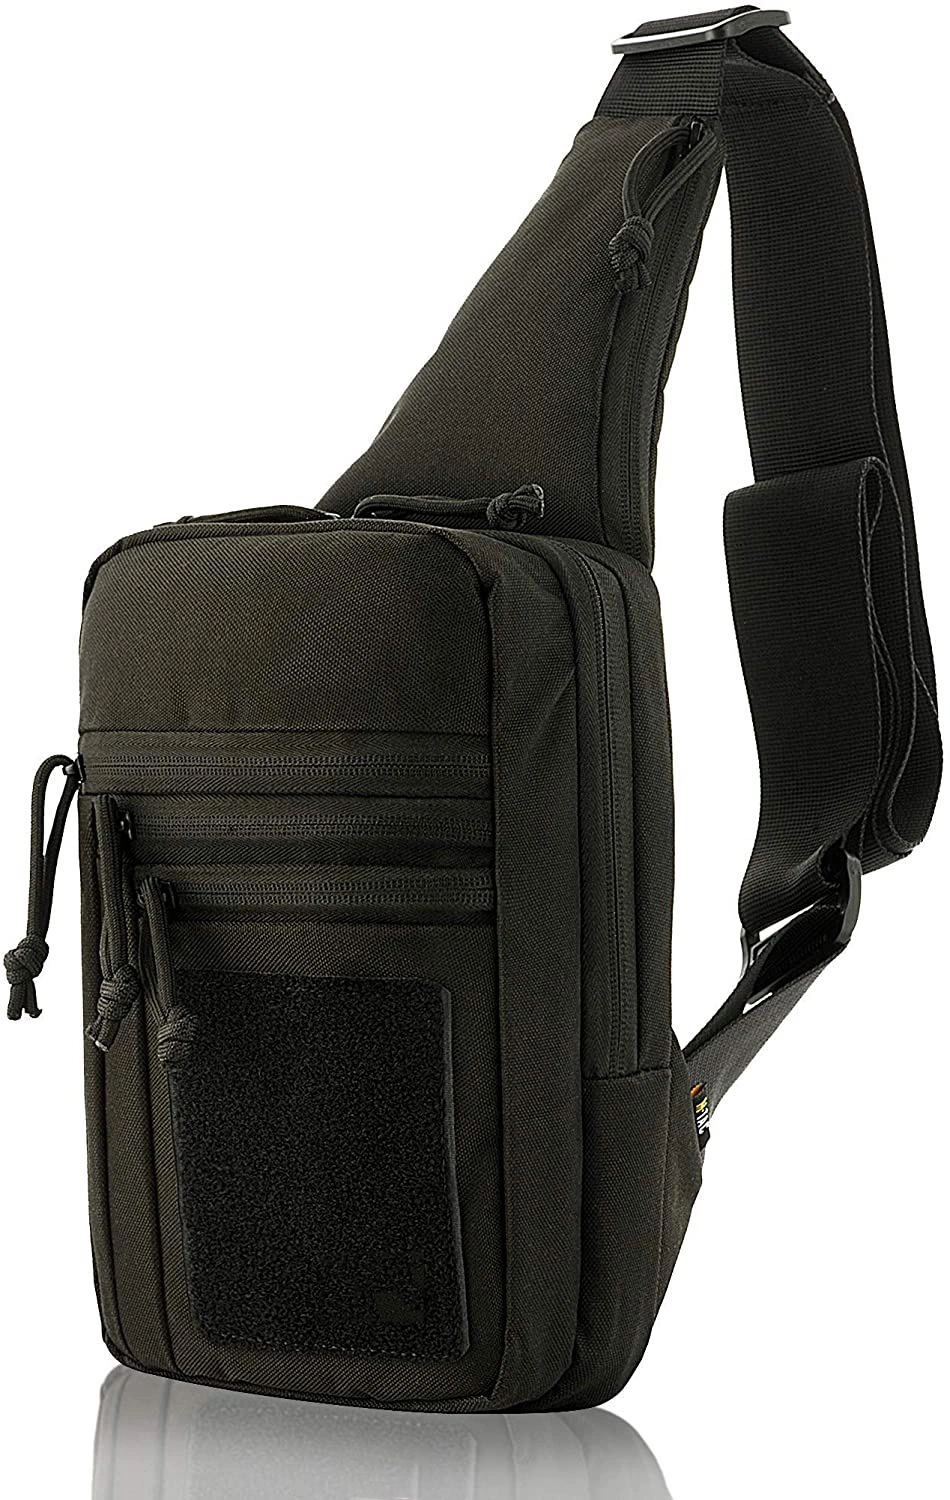 Tactical Bag Shoulder Chest Pack Bag with Sling